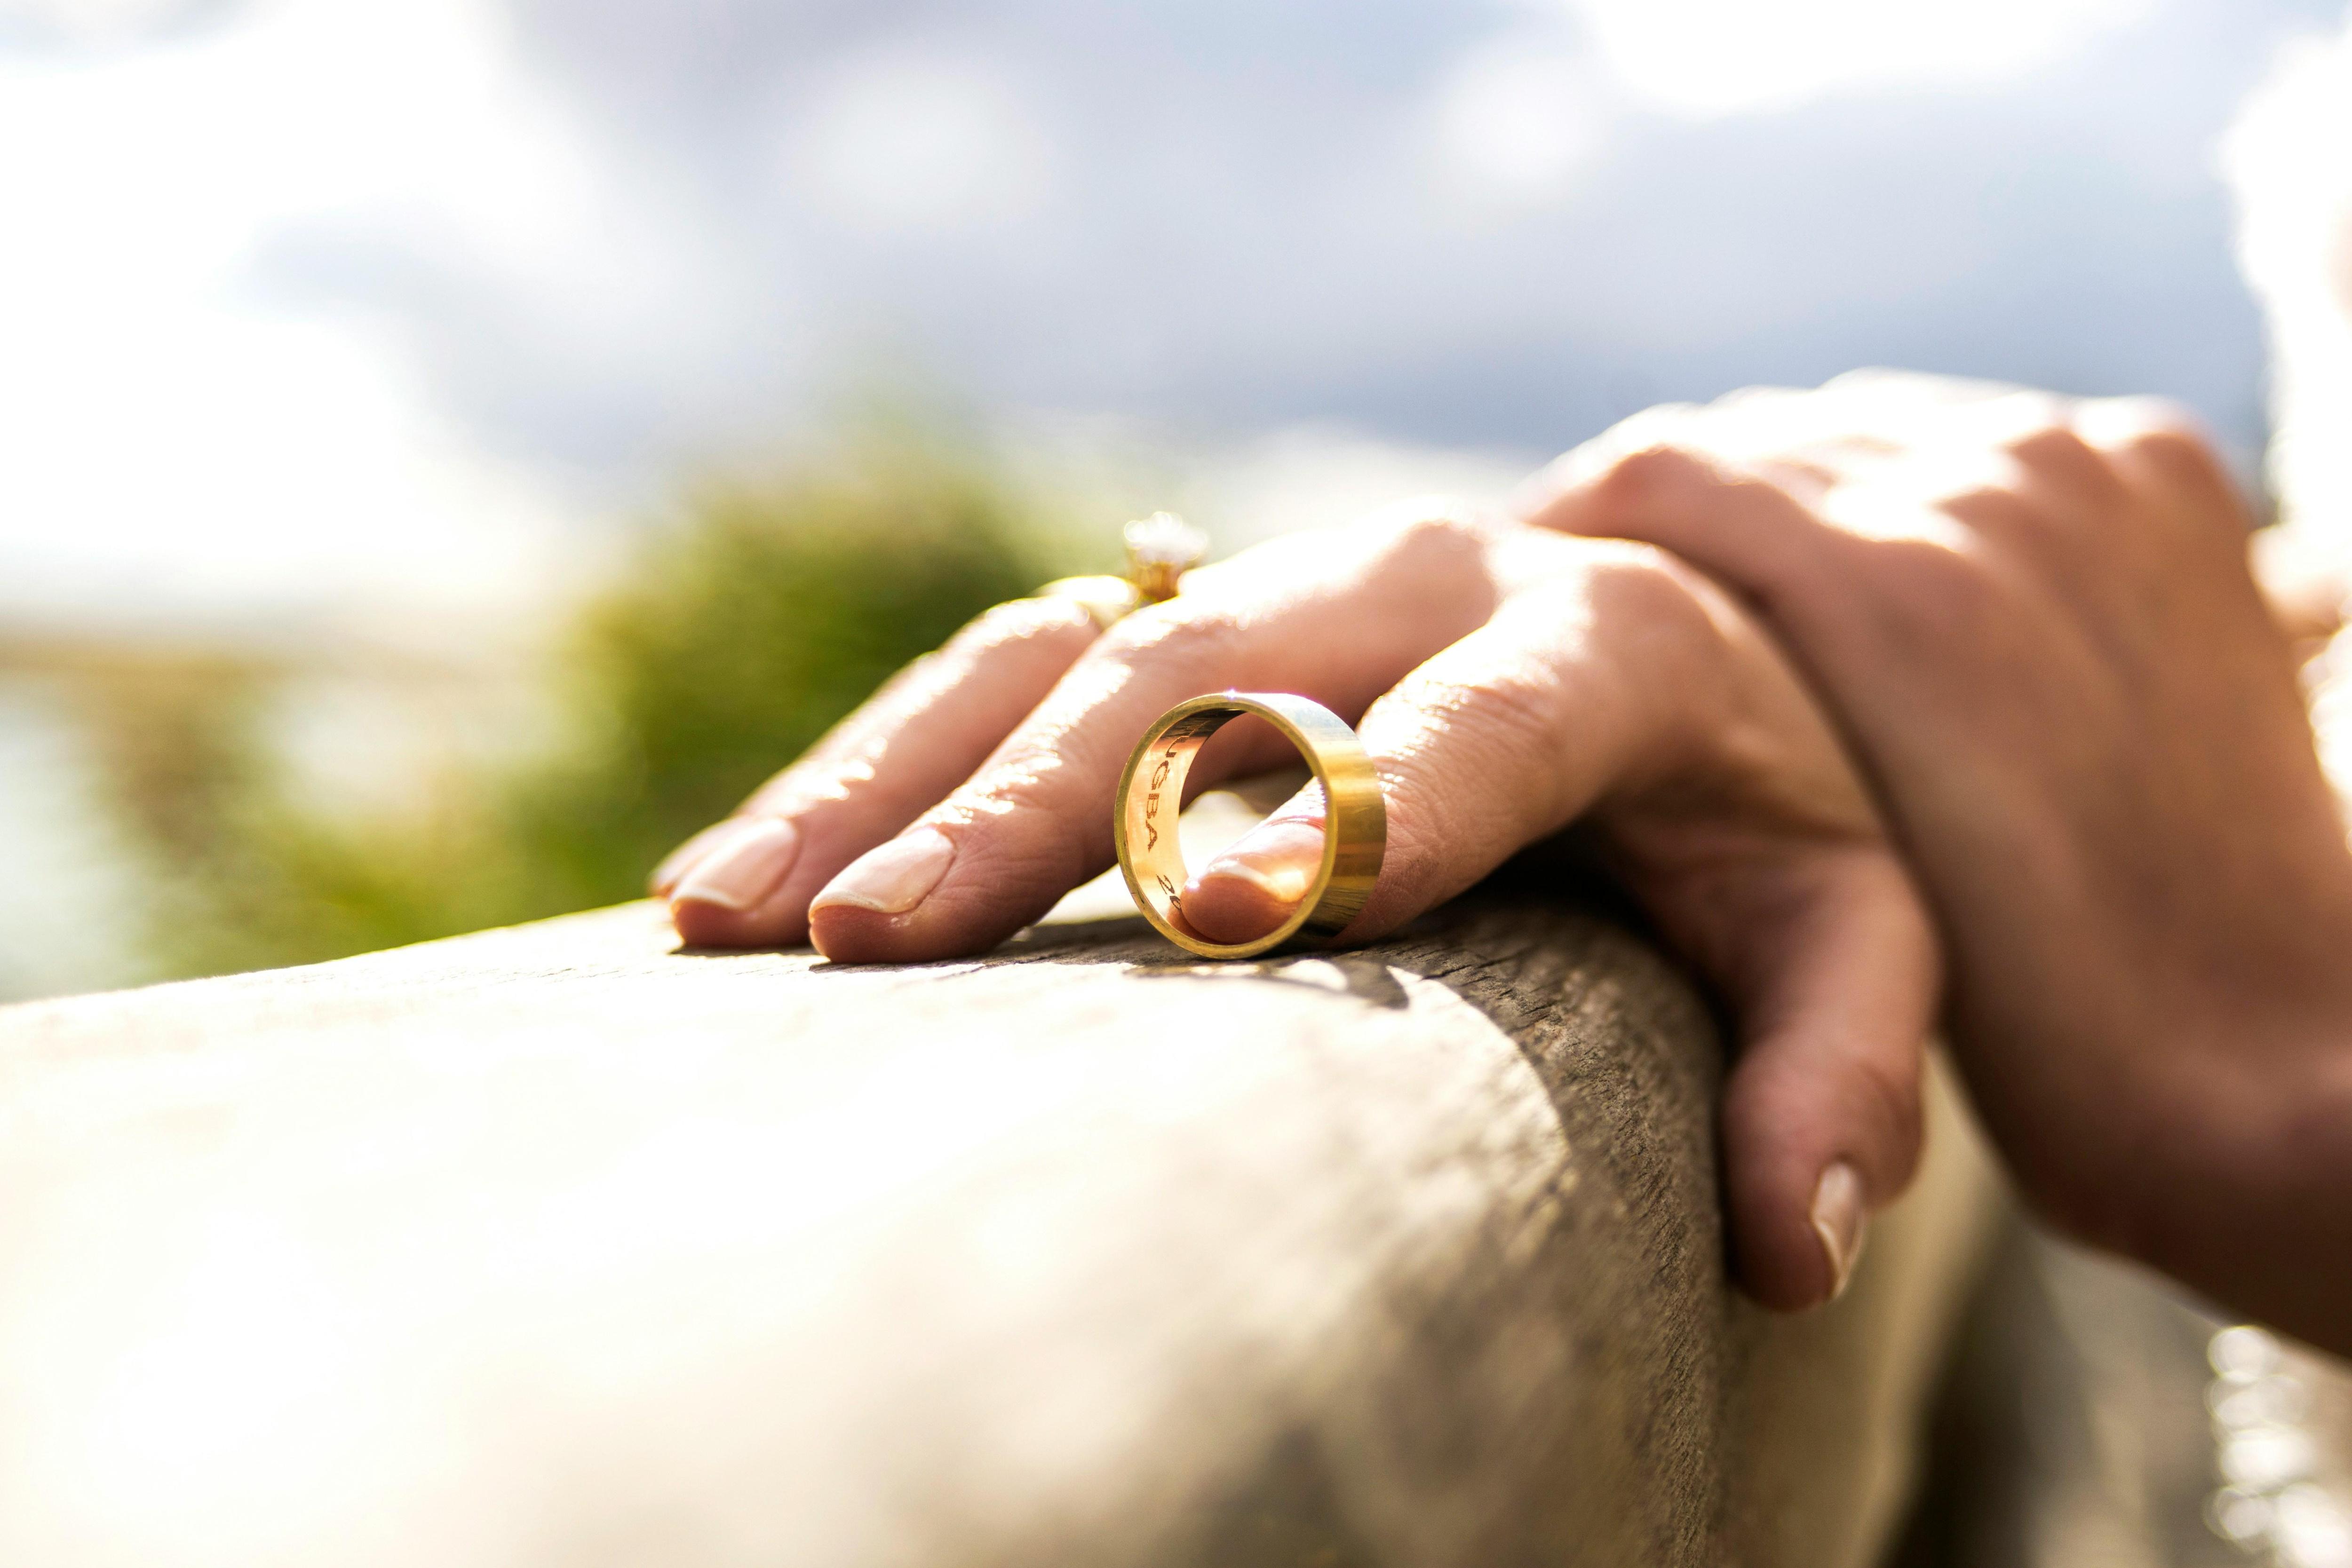 Госпошлину за развод увеличили в 8 раз: сколько теперь стоит расторжение брака